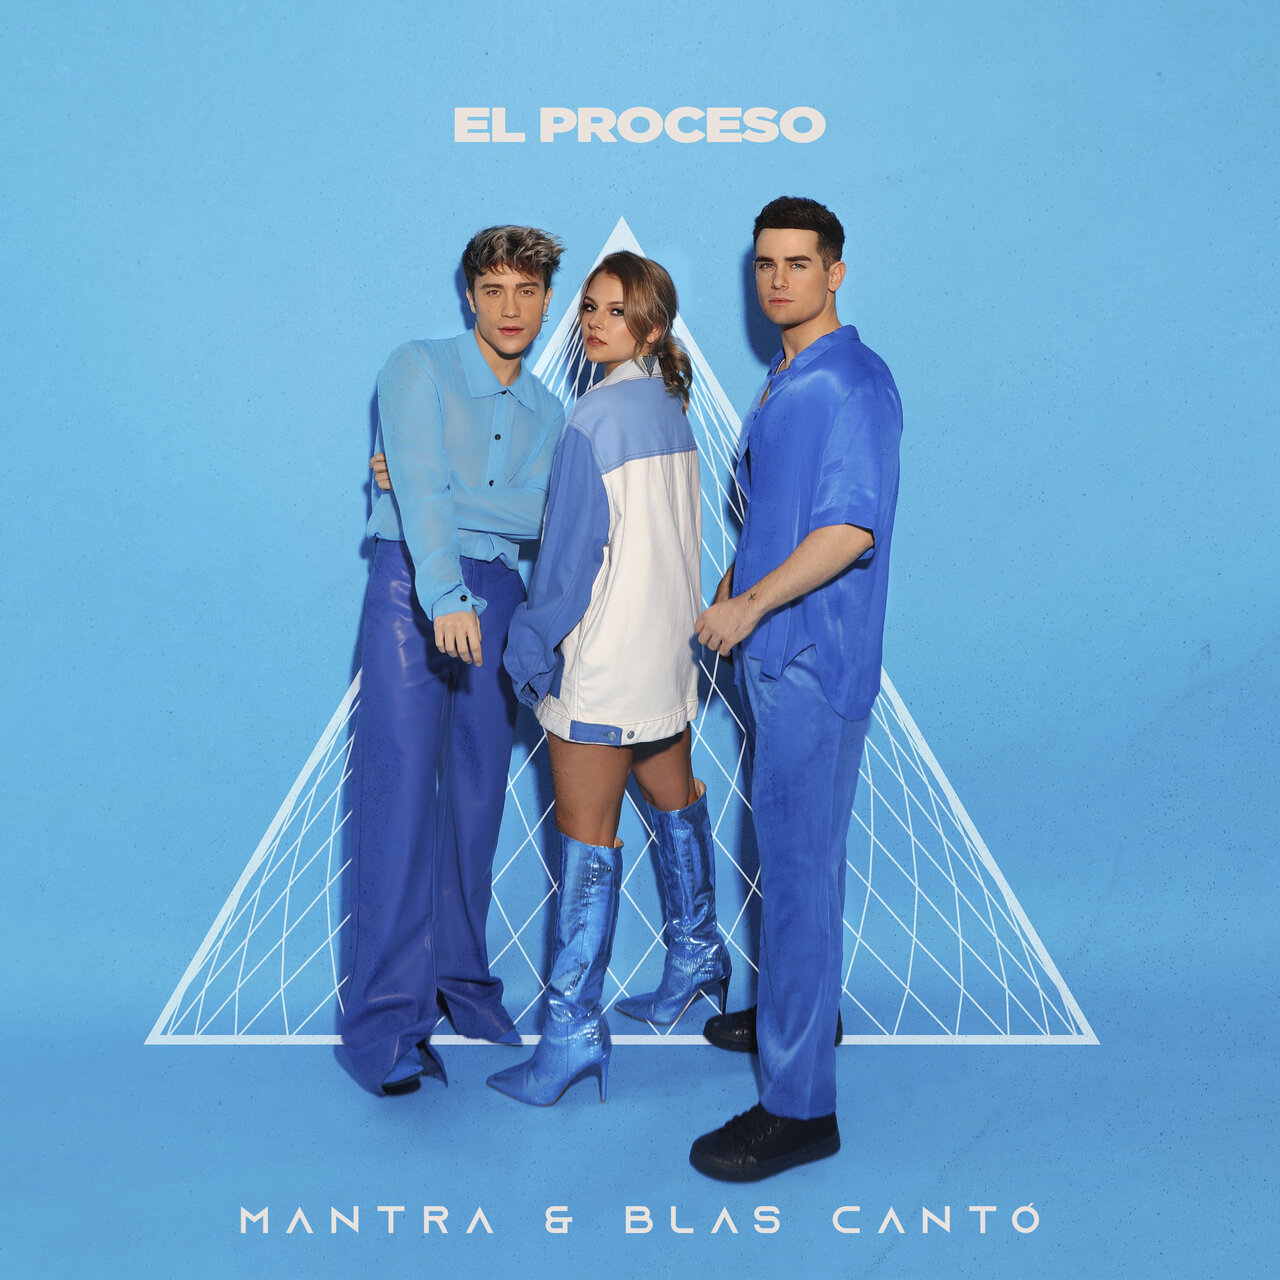 Mantra & Blas Cantó — El Proceso cover artwork